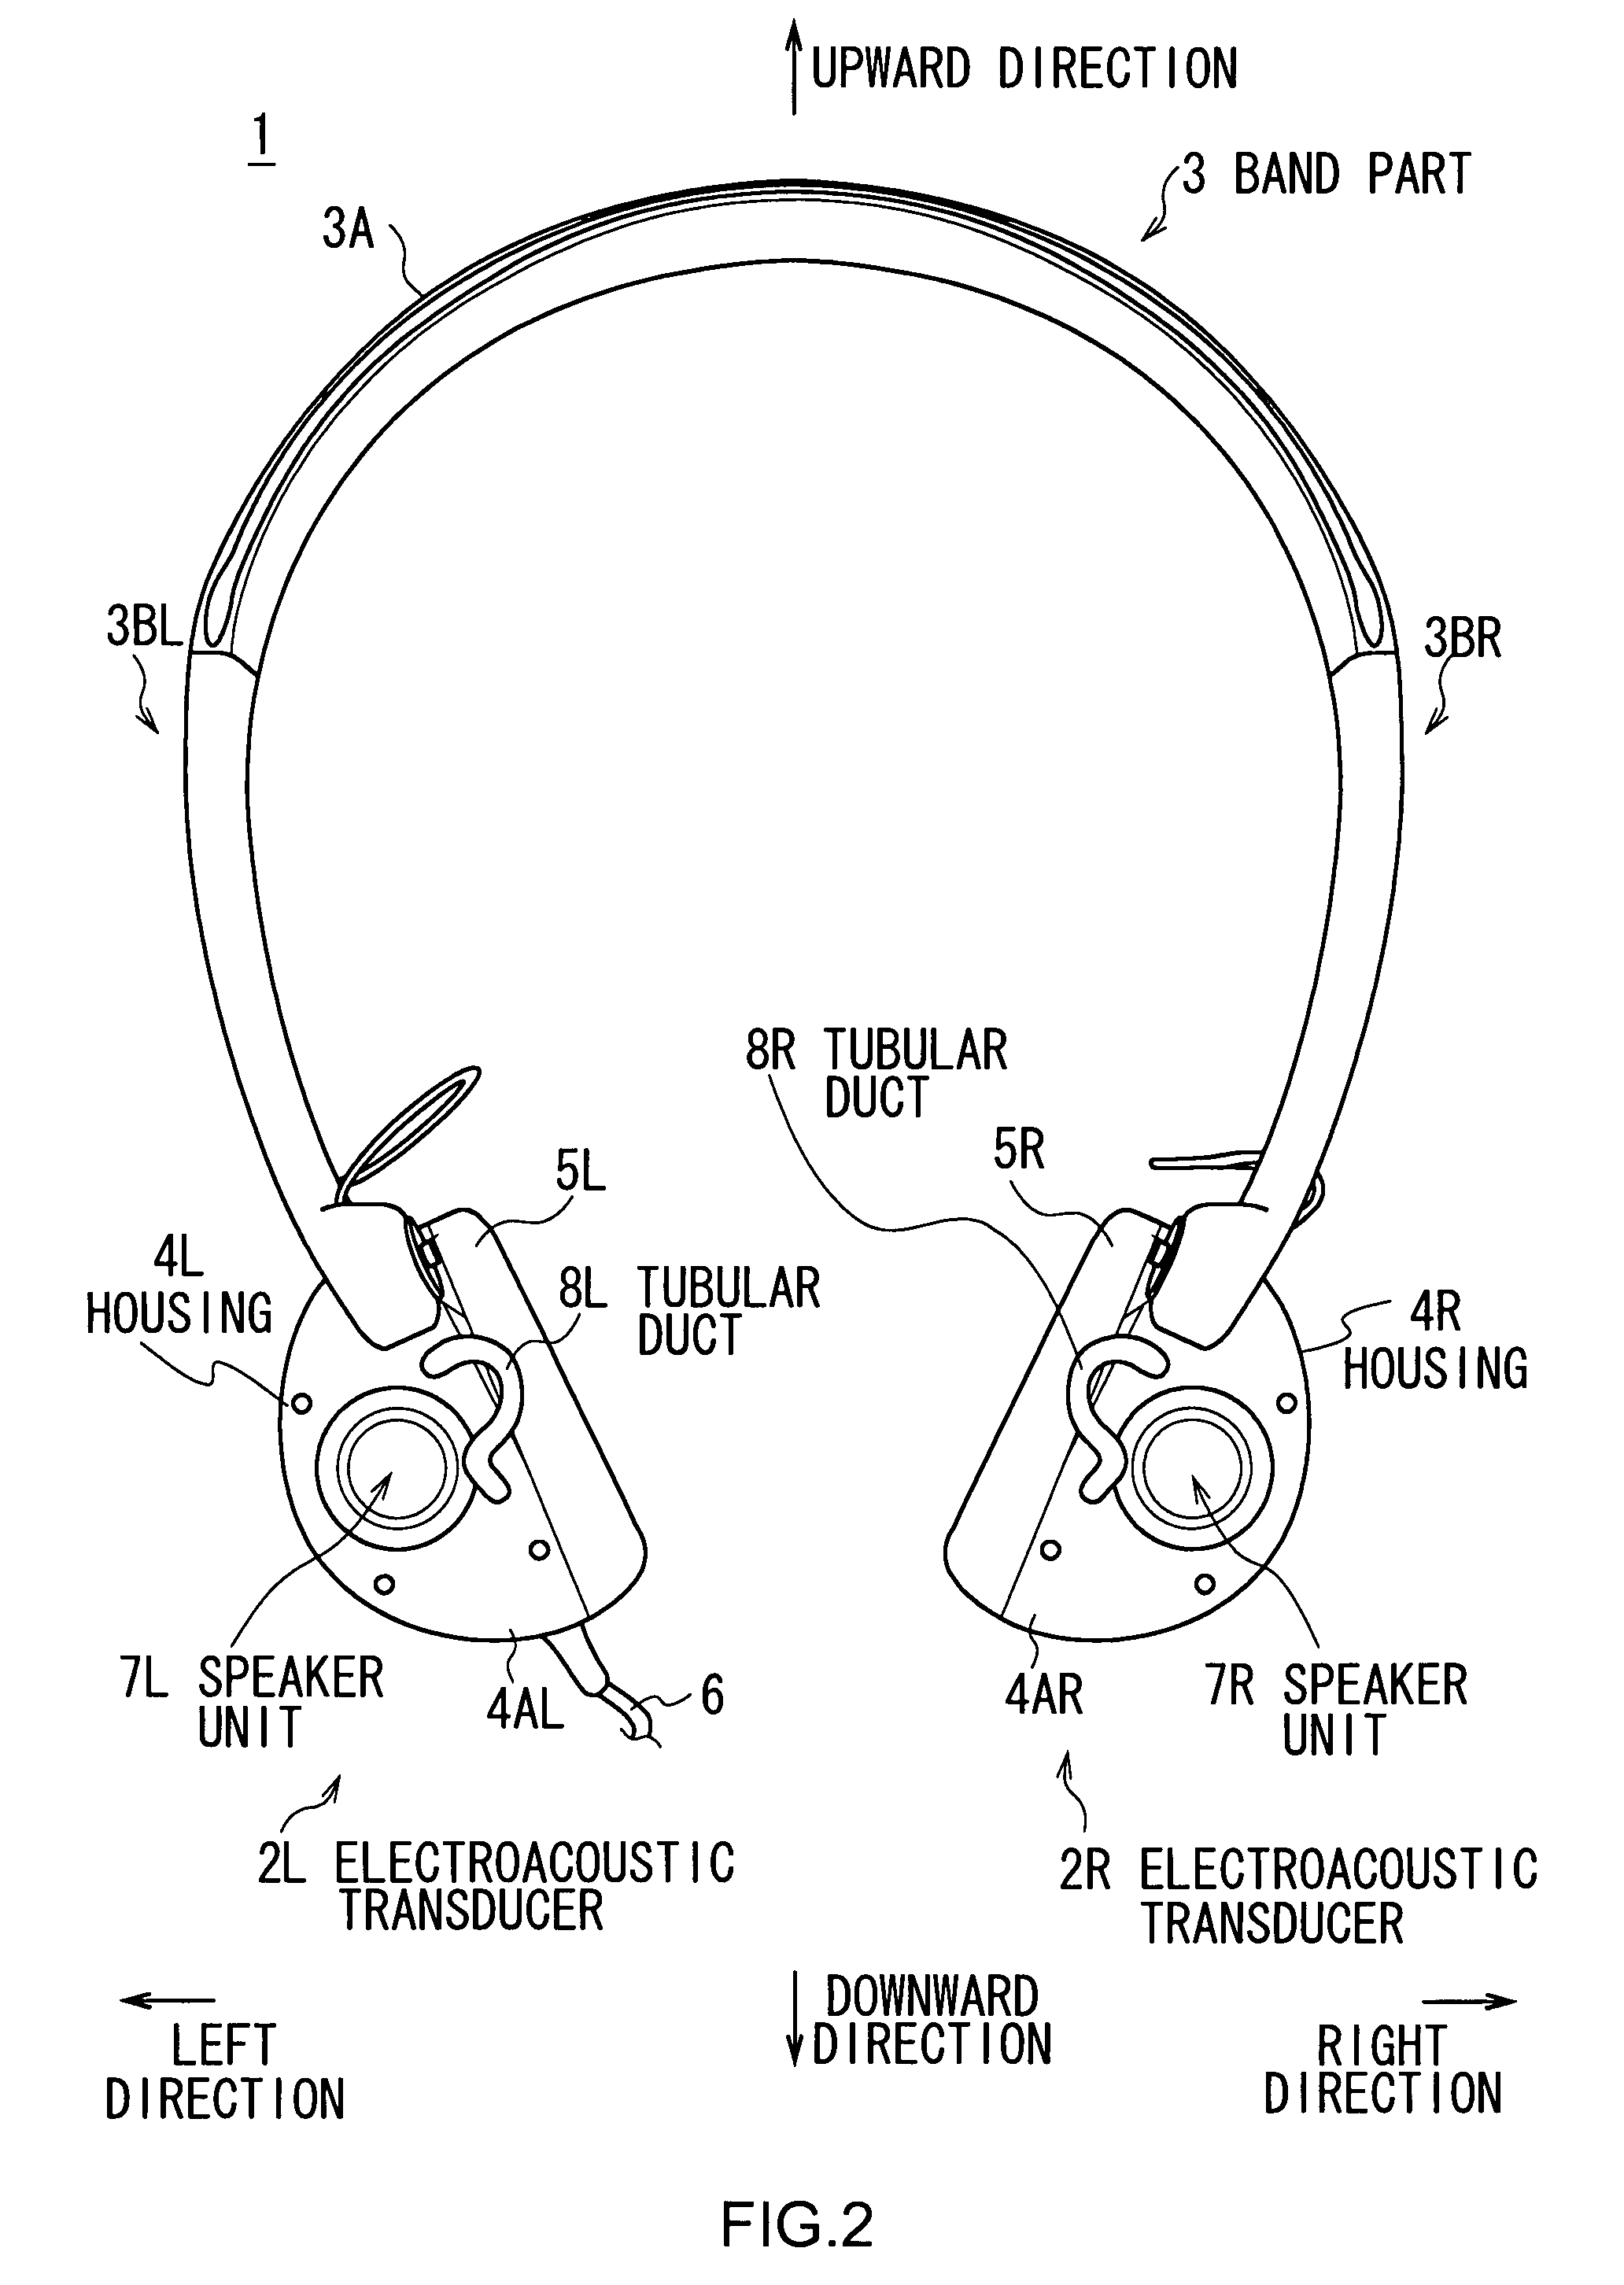 Ear speaker device